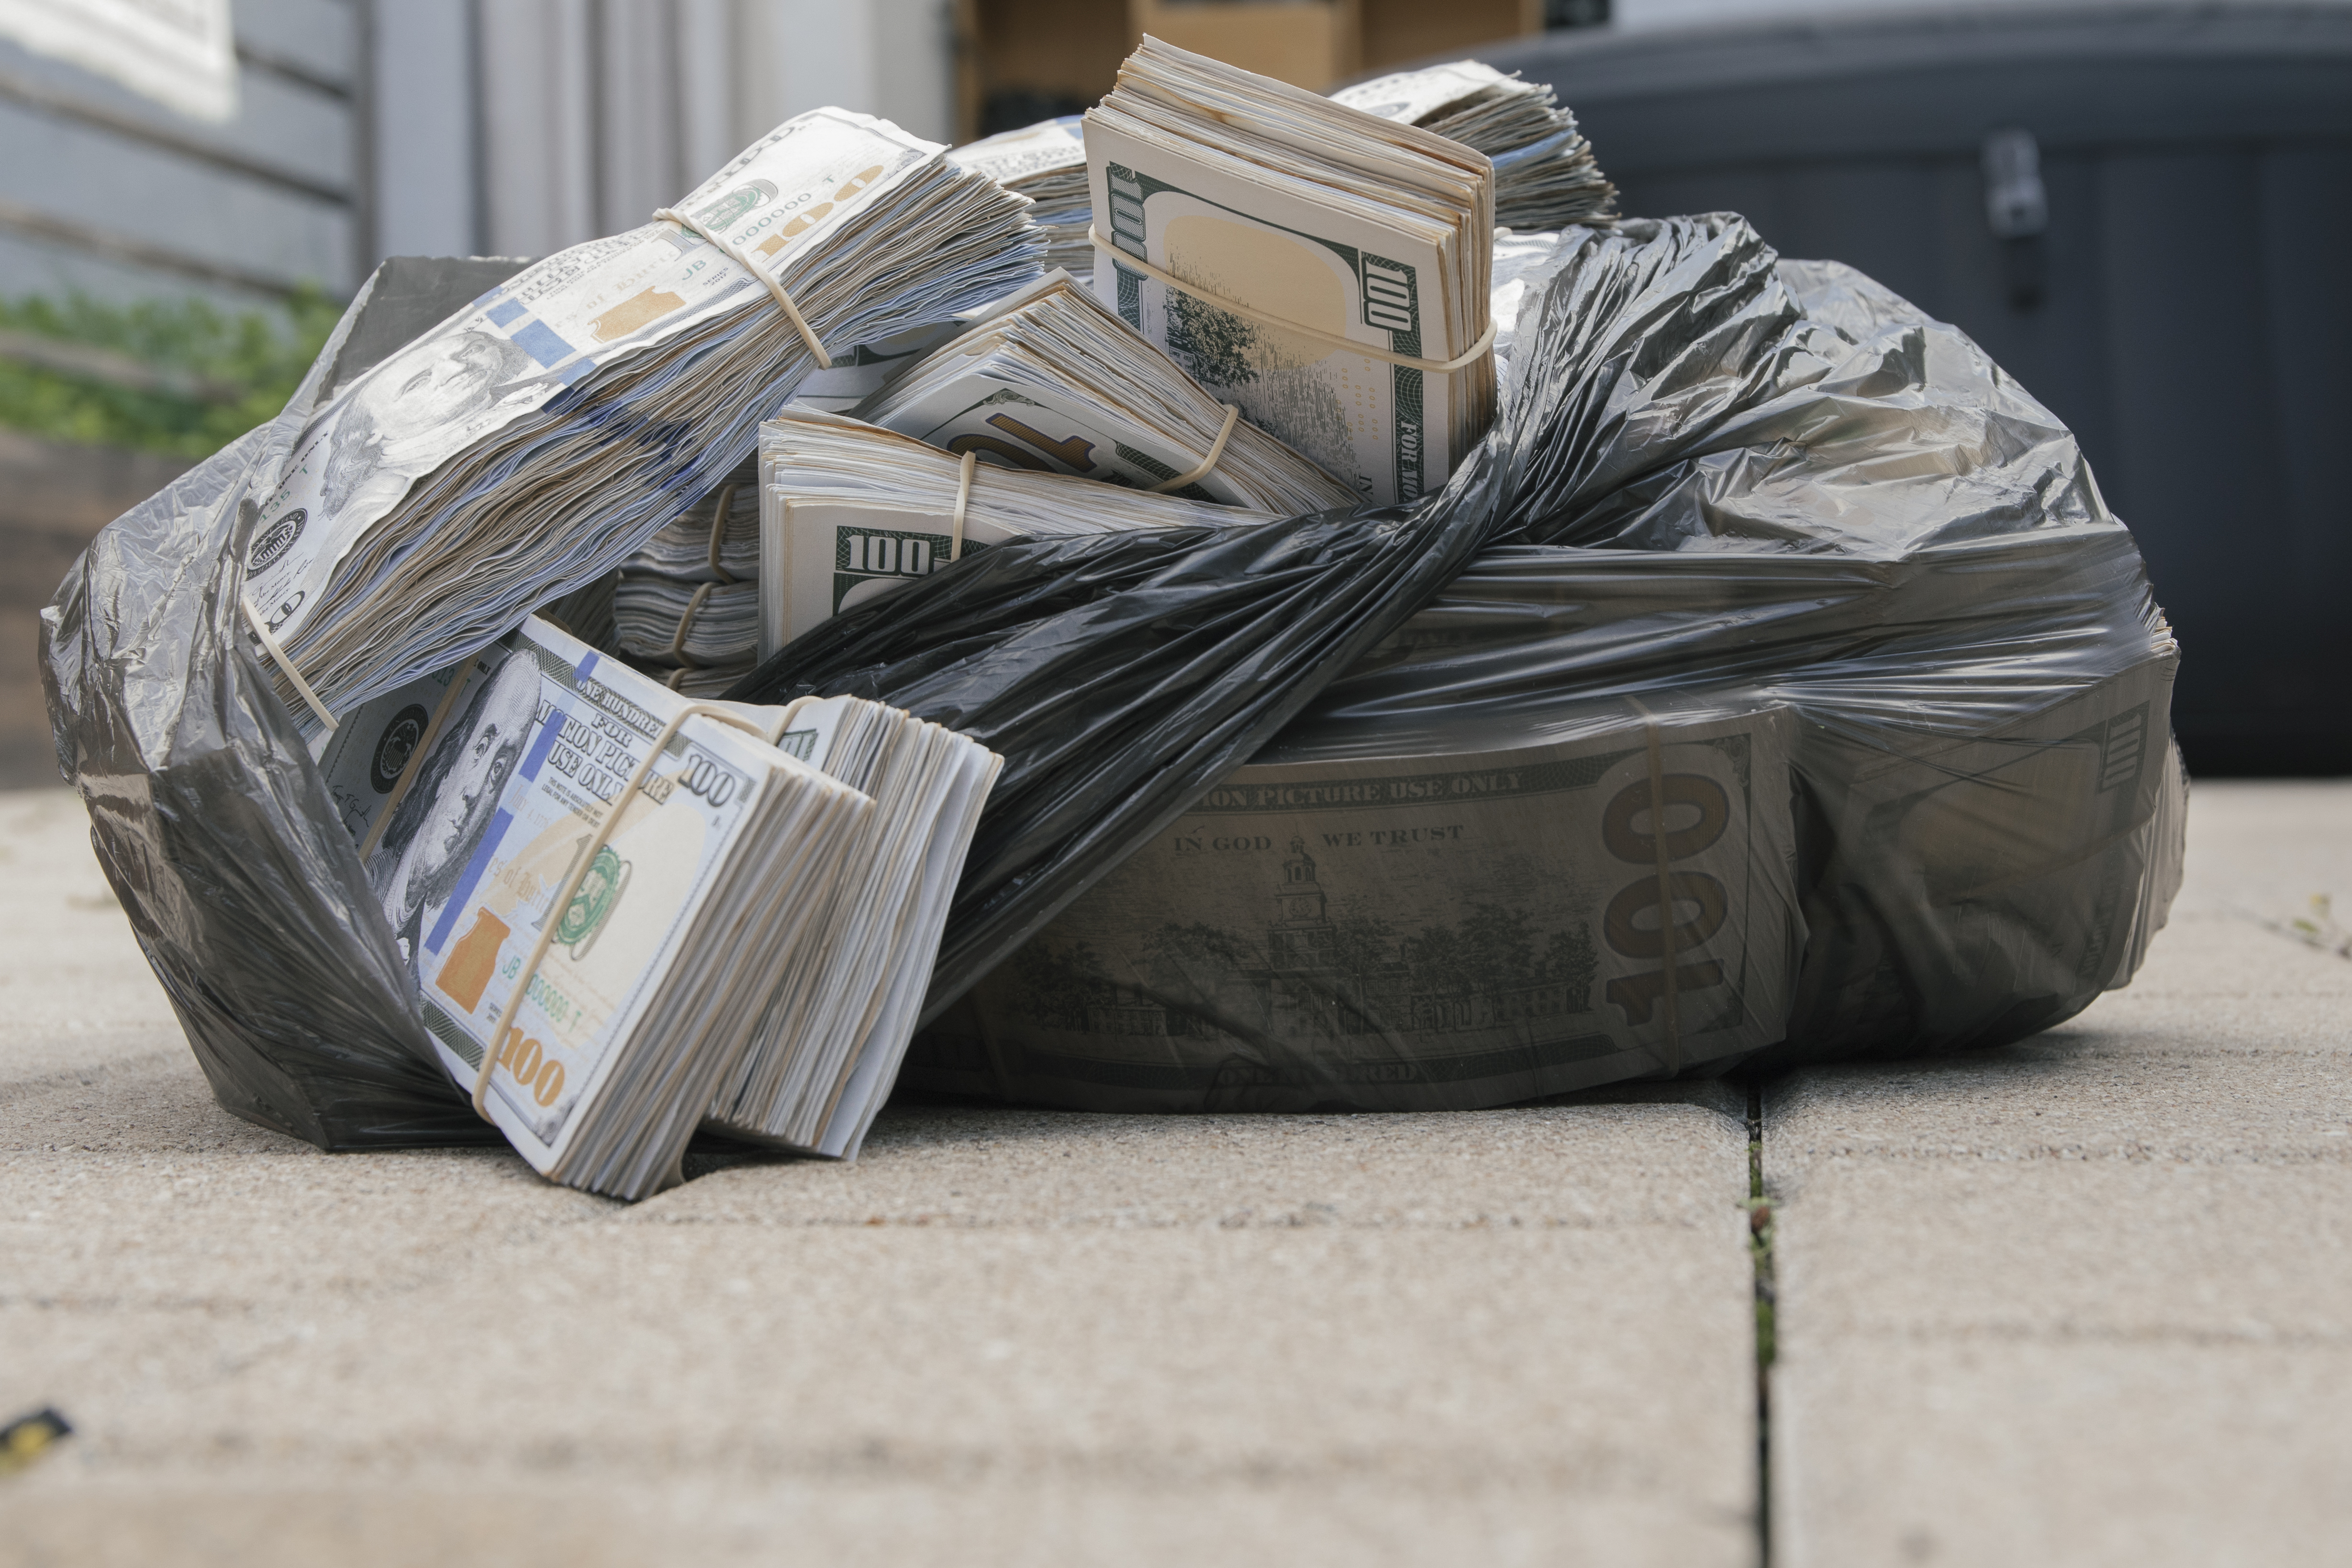 Mucho dinero en una bolsa de plástico | Fuente: Shutterstock.com